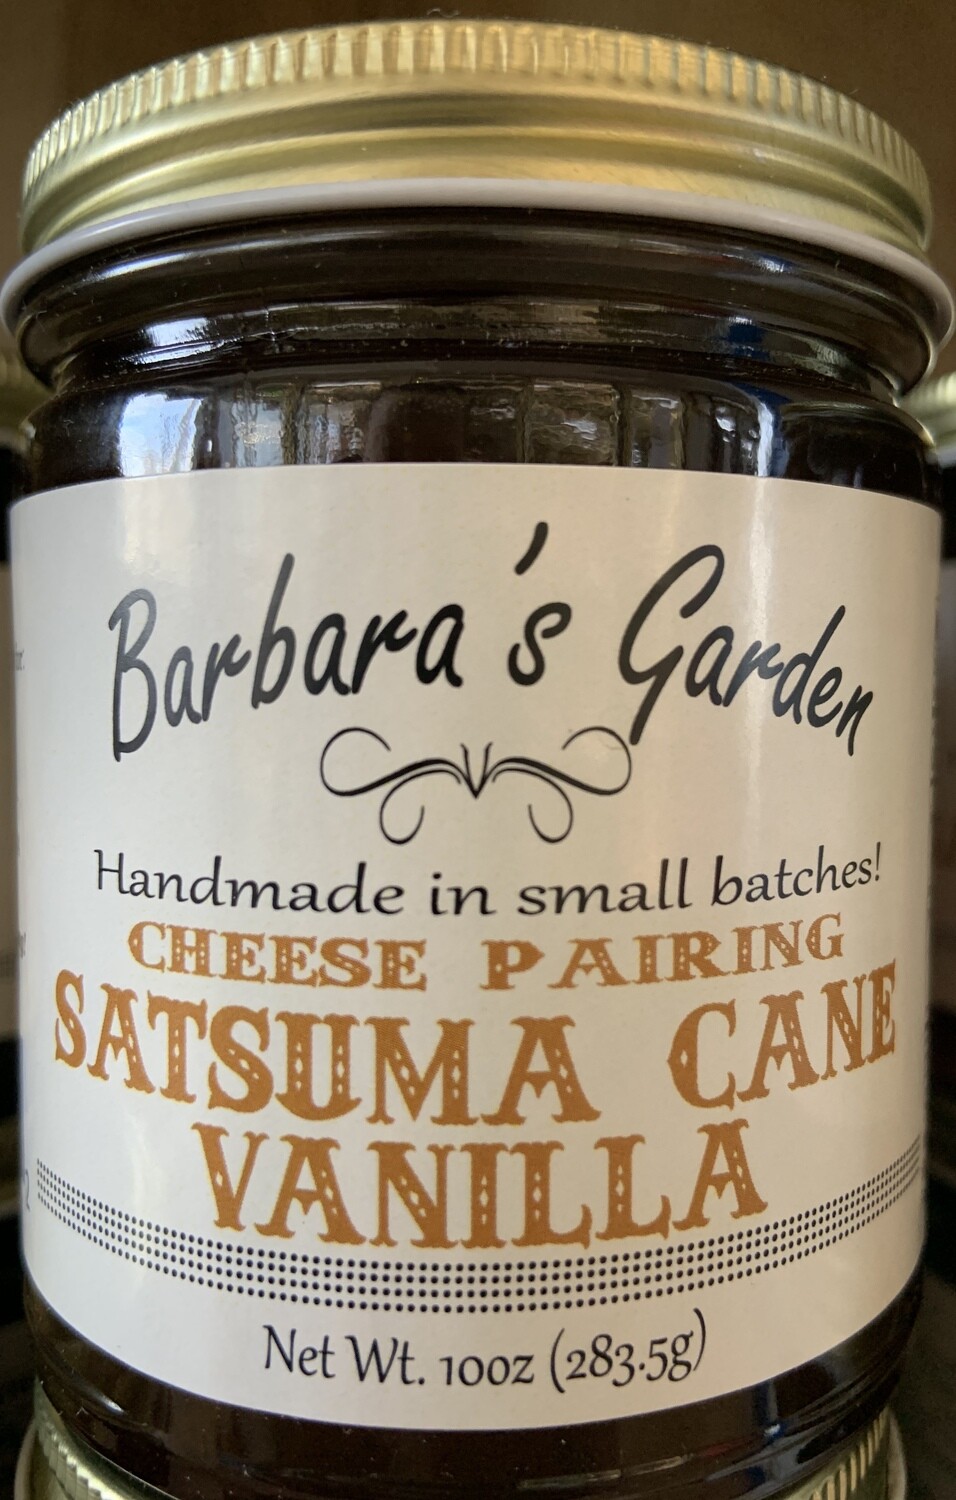 Barbara's Garden "Cheese Pairing" Satsuma Cane Vanilla Jelly 10 oz